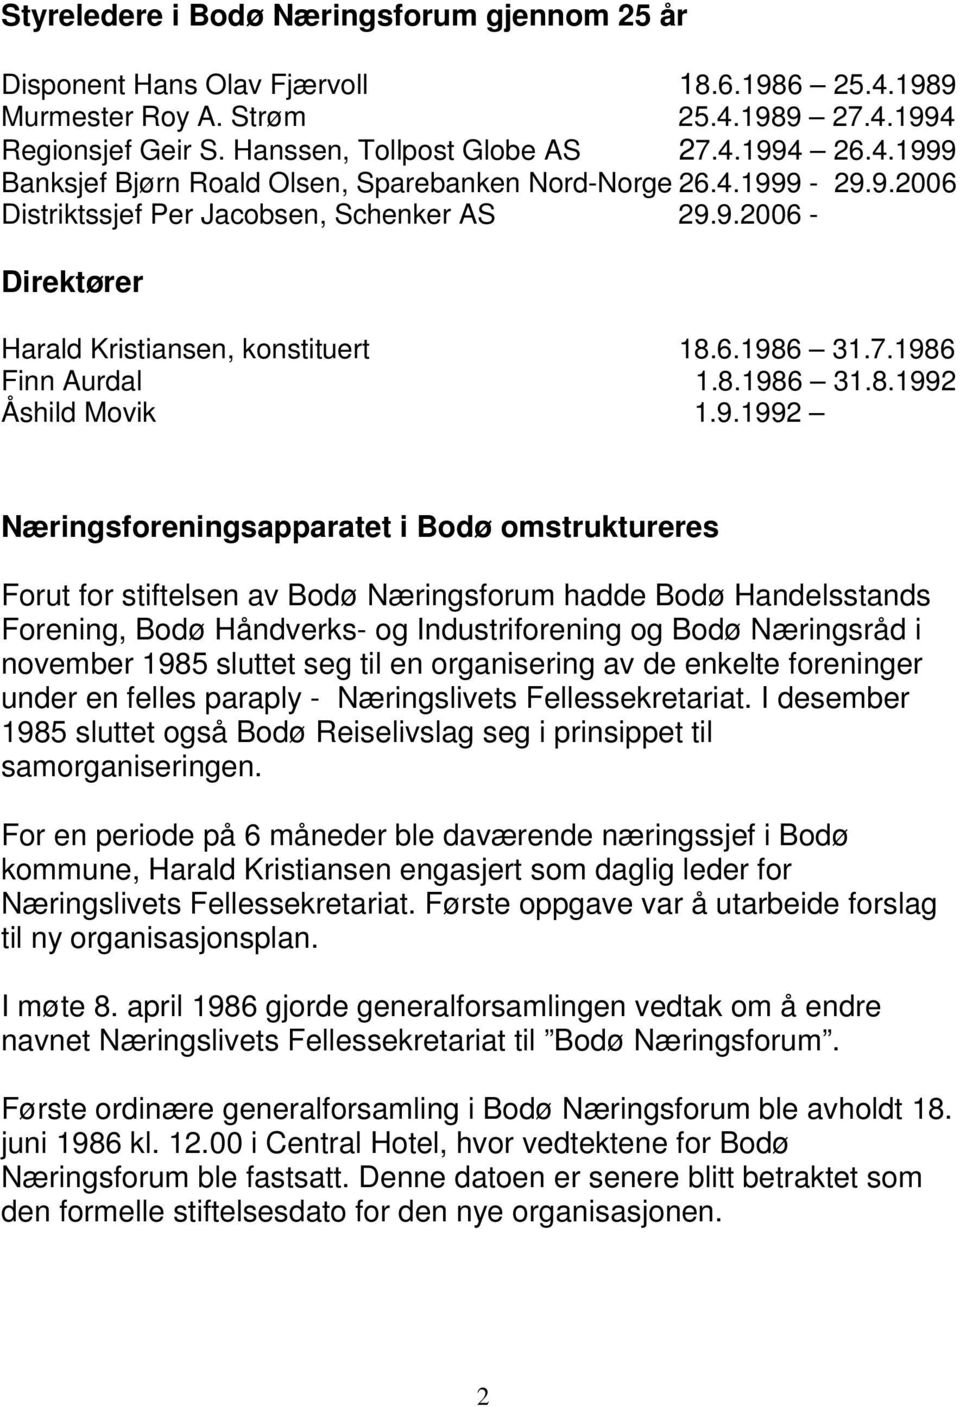 Næringsforeningsapparatet i Bodø omstruktureres Forut for stiftelsen av Bodø Næringsforum hadde Bodø Handelsstands Forening, Bodø Håndverks- og Industriforening og Bodø Næringsråd i november 1985